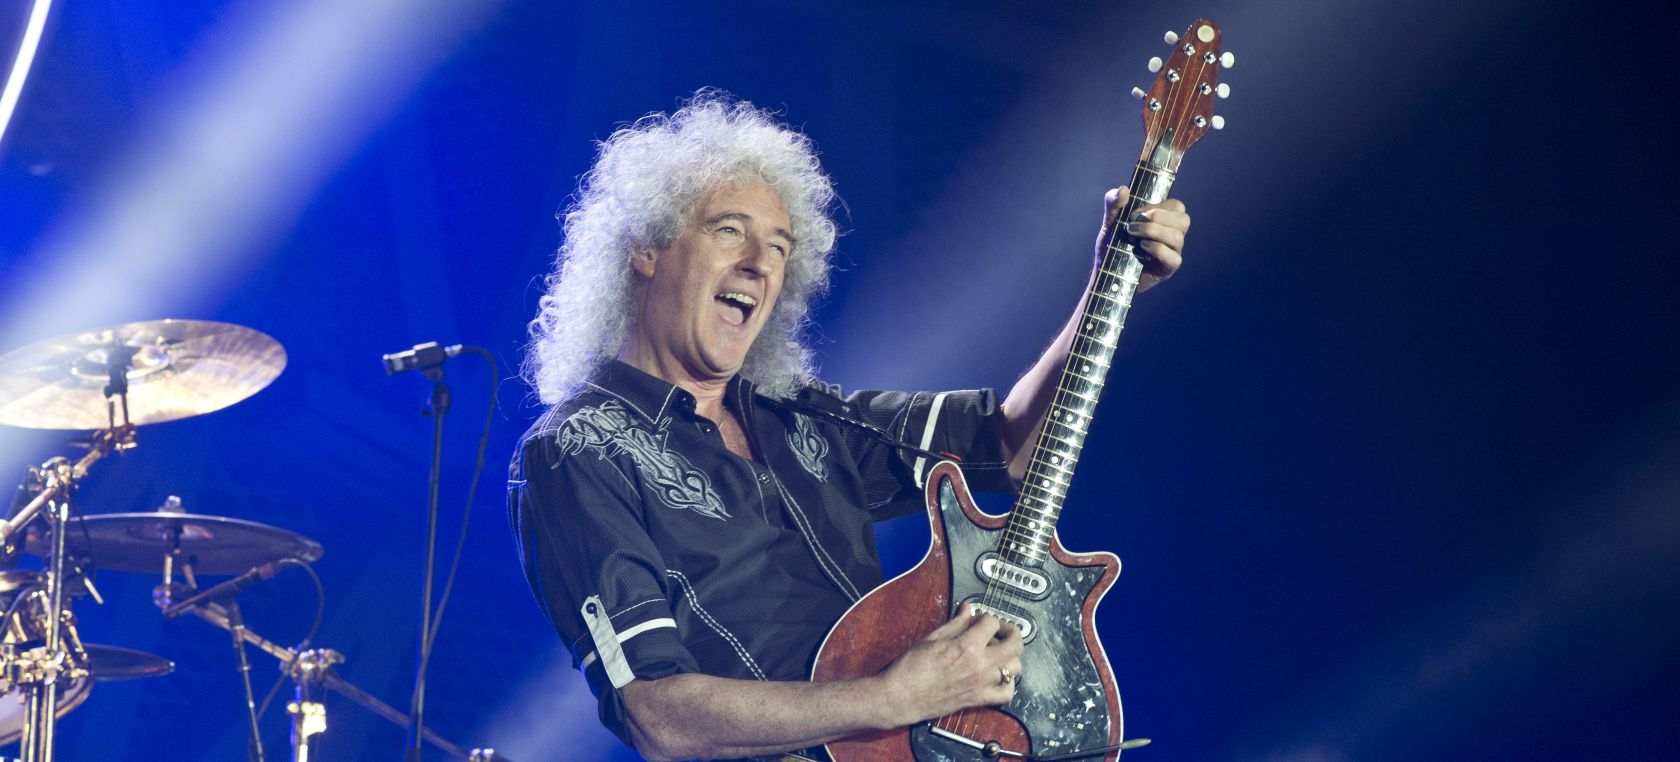 Brian May, el guitarrista, astrofísico y guardián del legado de Queen, cumple 75 años